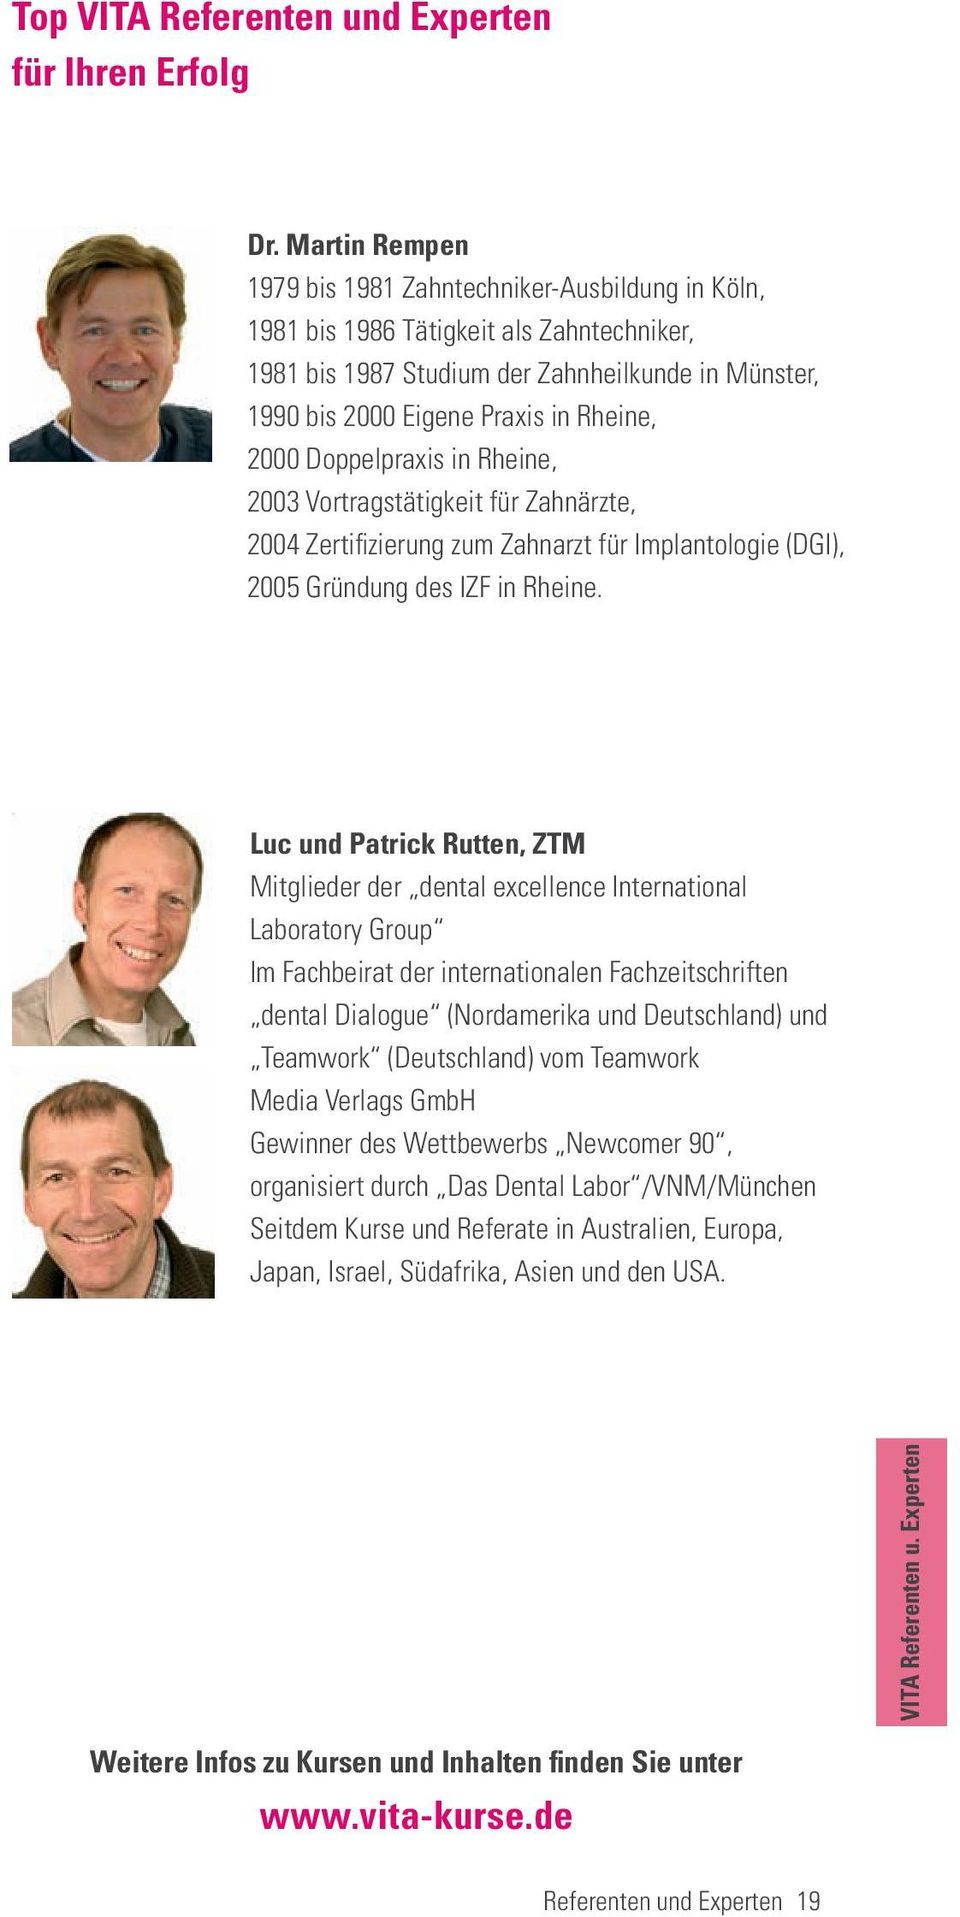 2000 Doppelpraxis in Rheine, 2003 Vortragstätigkeit für Zahnärzte, 2004 Zertifizierung zum Zahnarzt für Implantologie (DGI), 2005 Gründung des IZF in Rheine.